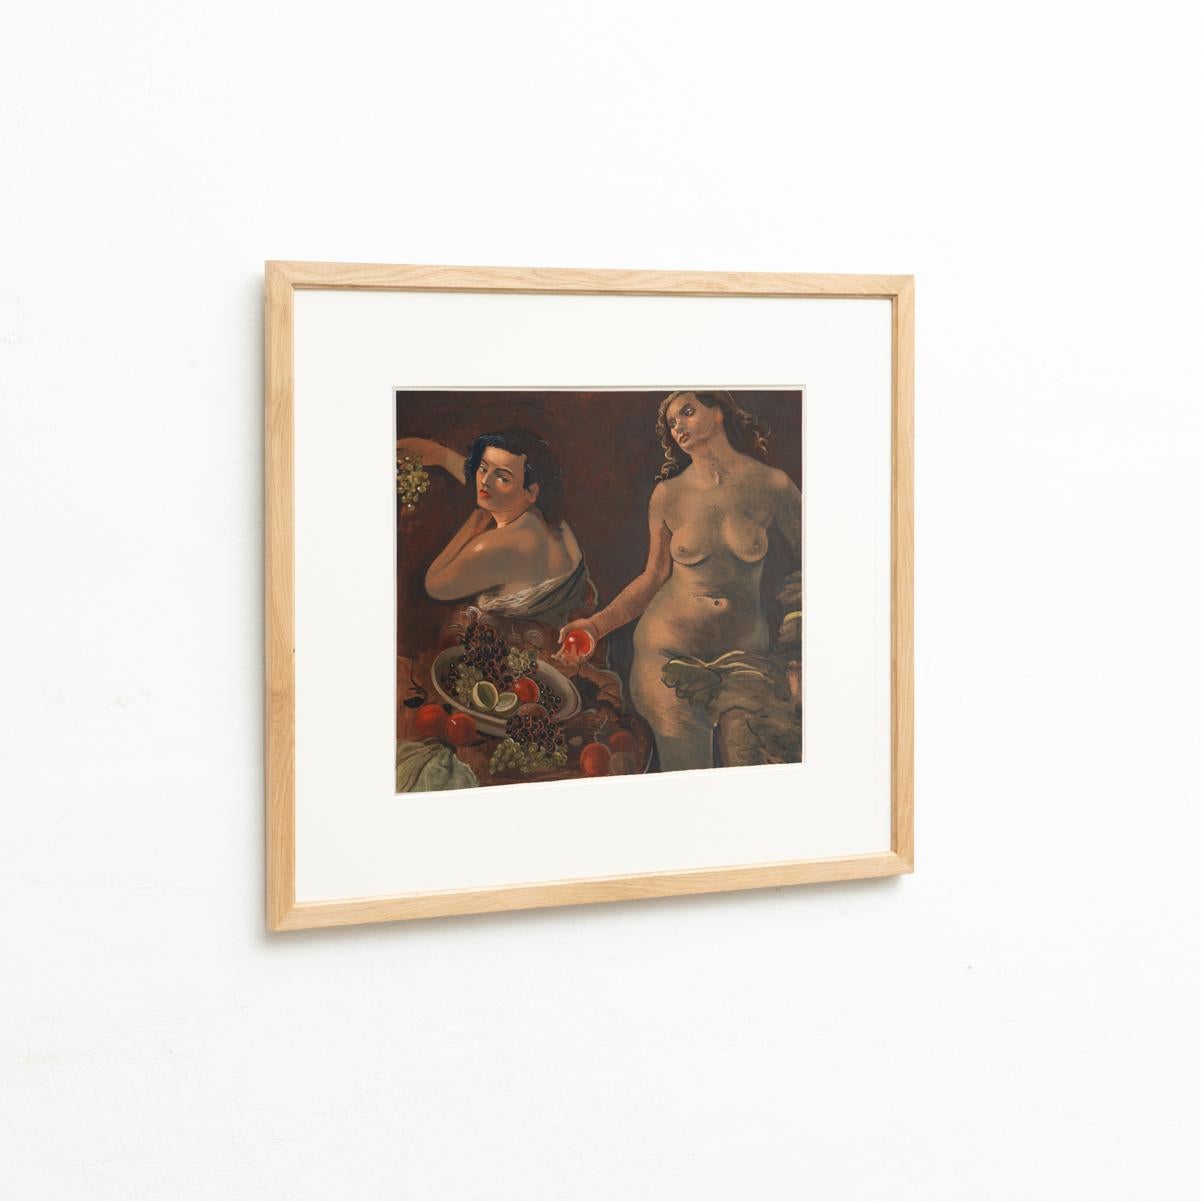 Modern André Derain Framed 'Deux femmes nues et nature morte' Lithograph, circa 1970 For Sale